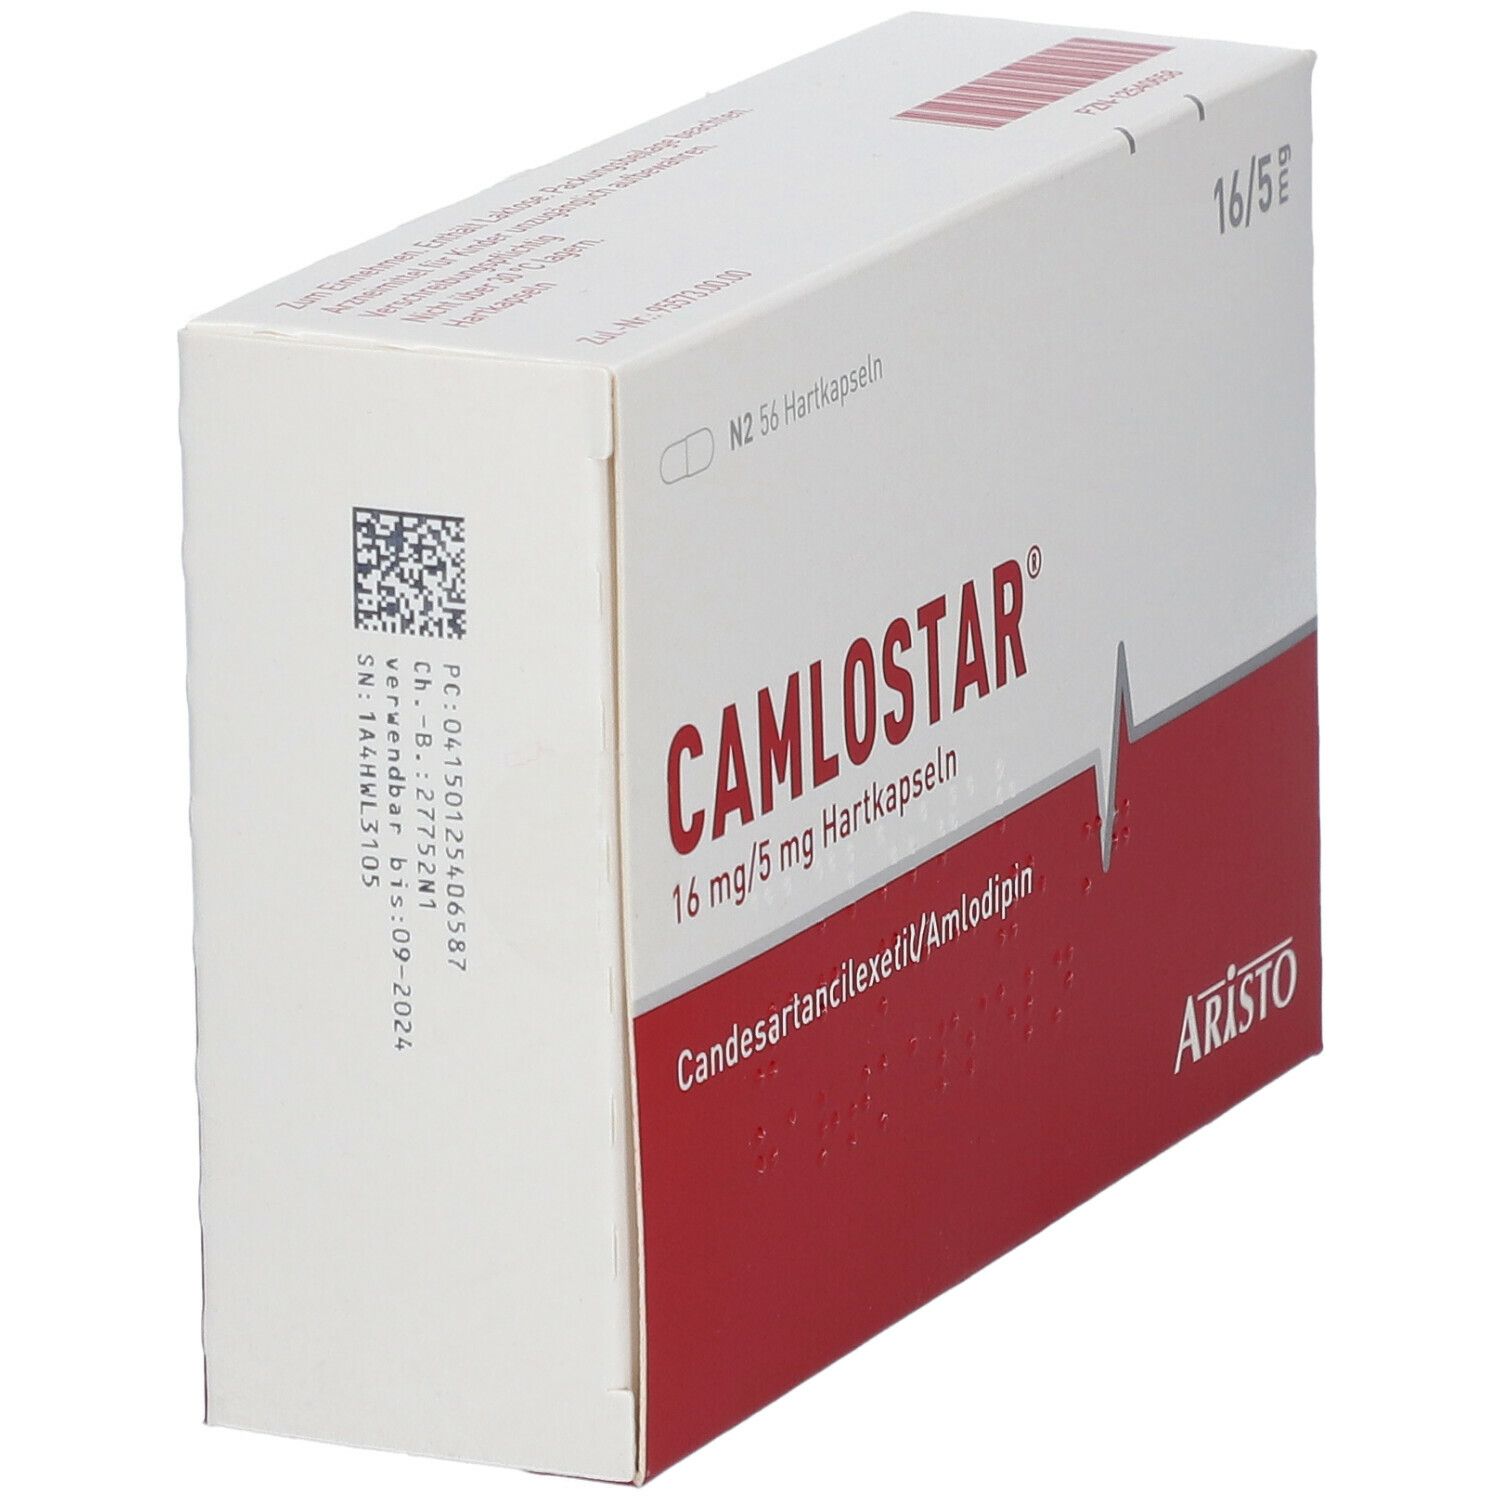 CAMLOSTAR® 16 mg/5 mg